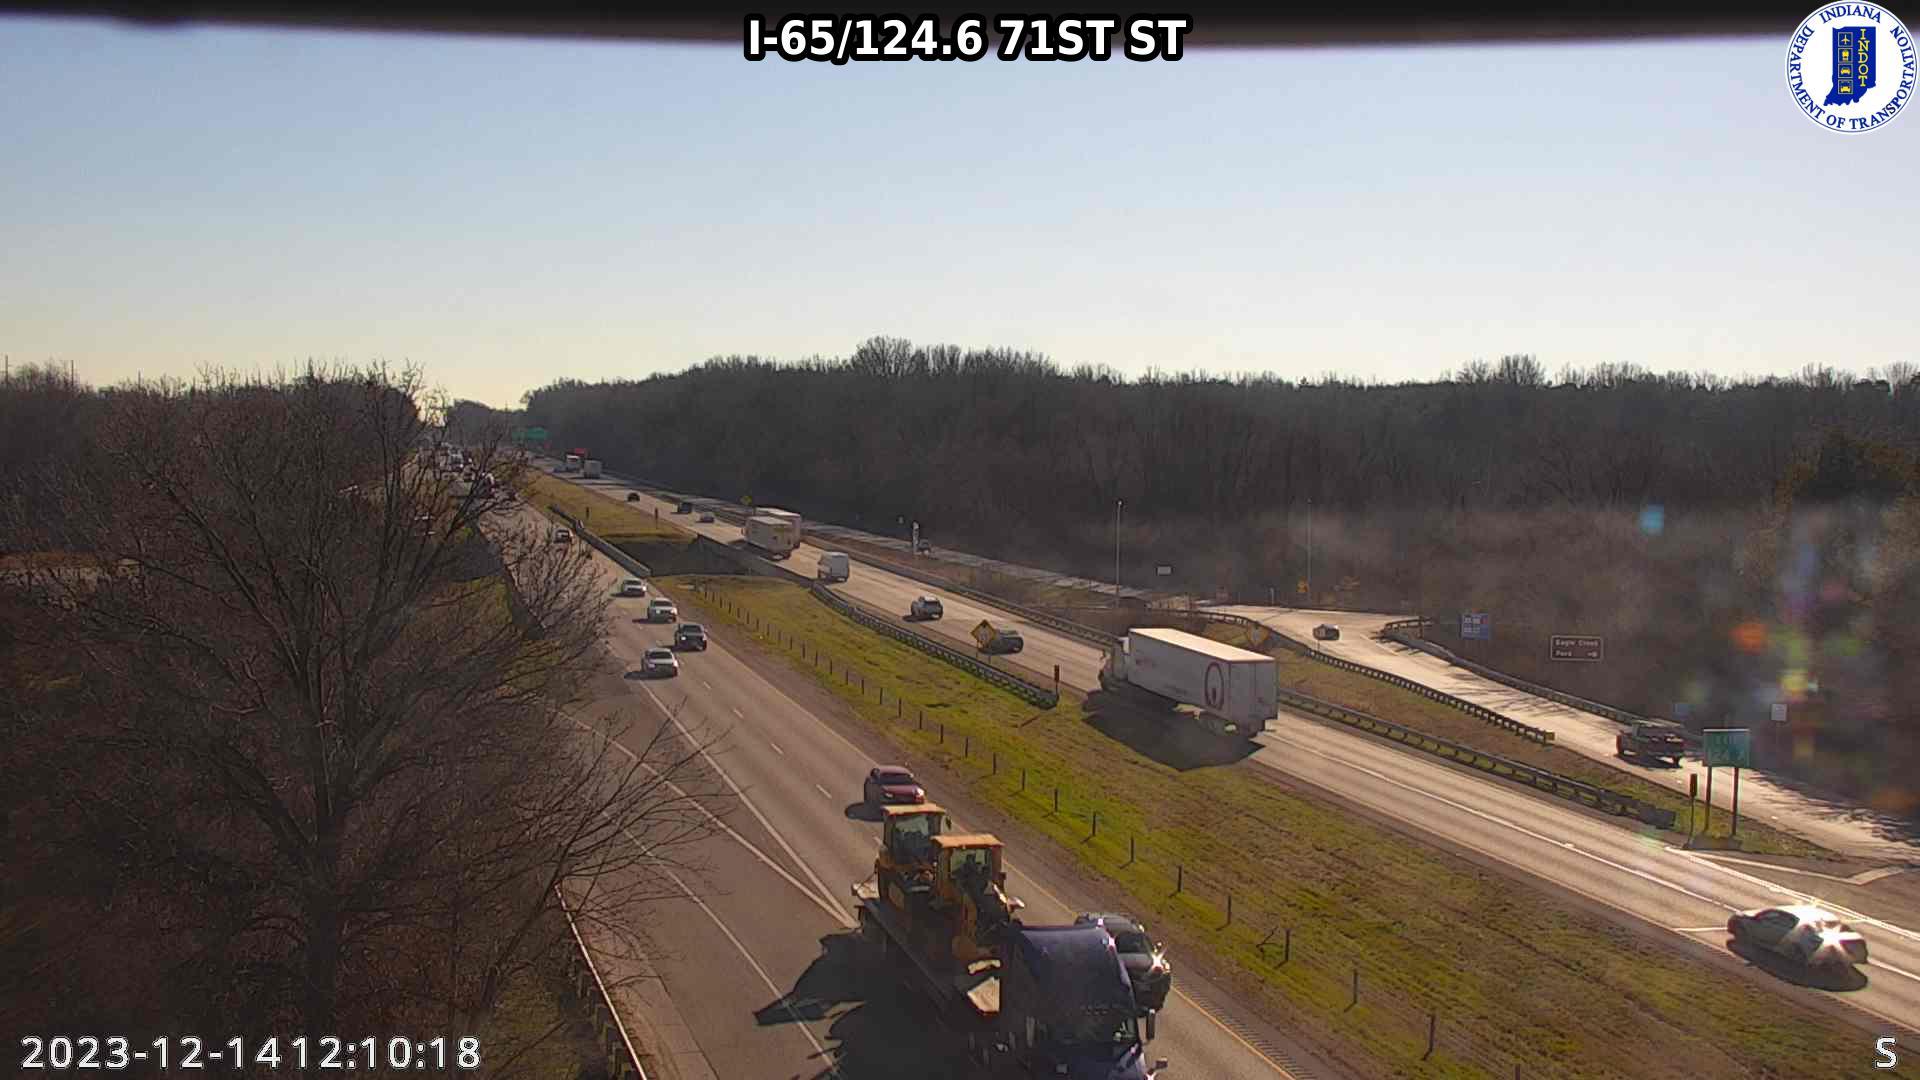 Indianapolis: I-65: I-65/124.6 71ST ST Traffic Camera